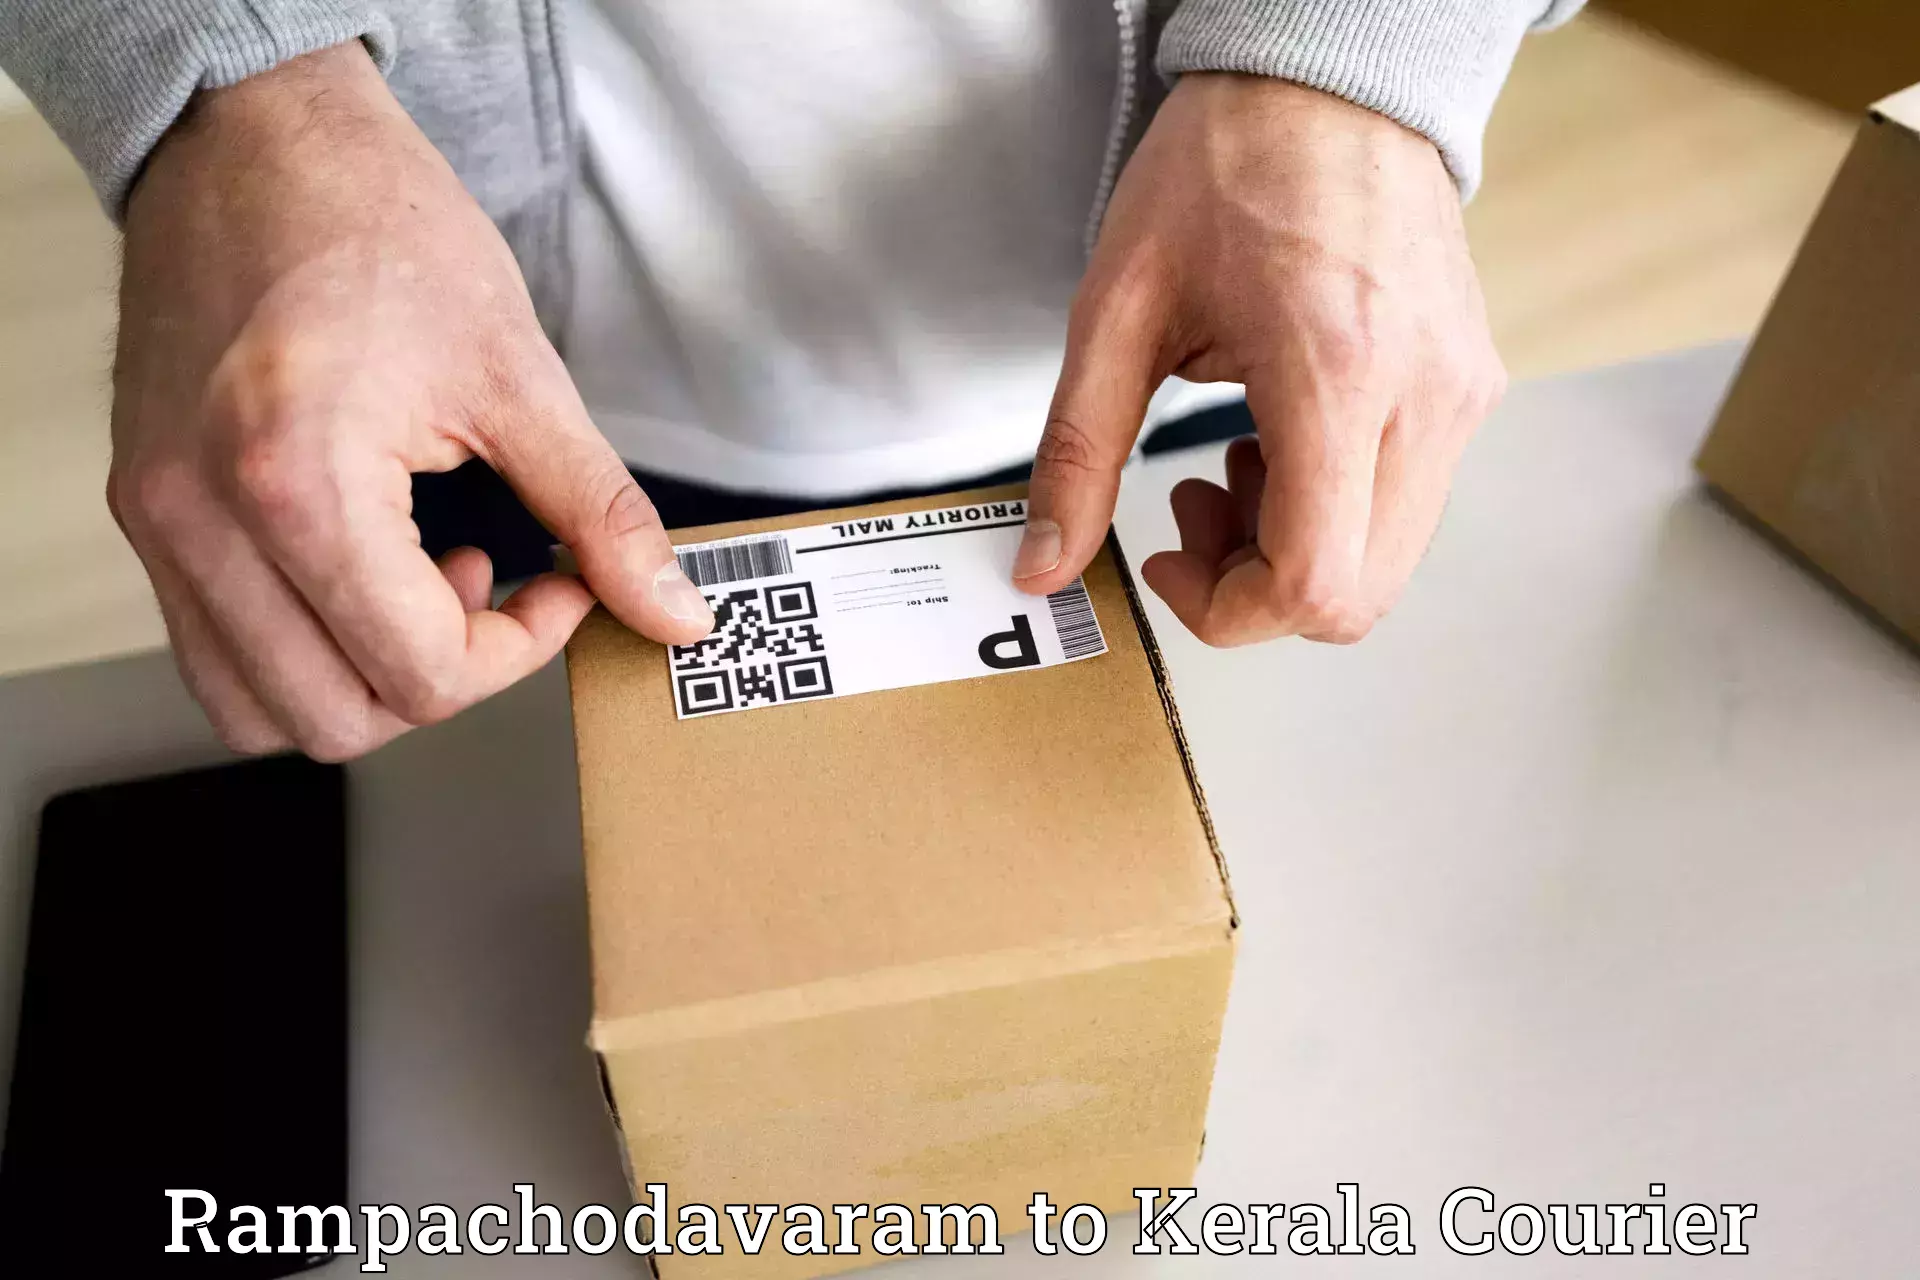 Express delivery solutions Rampachodavaram to Kattappana